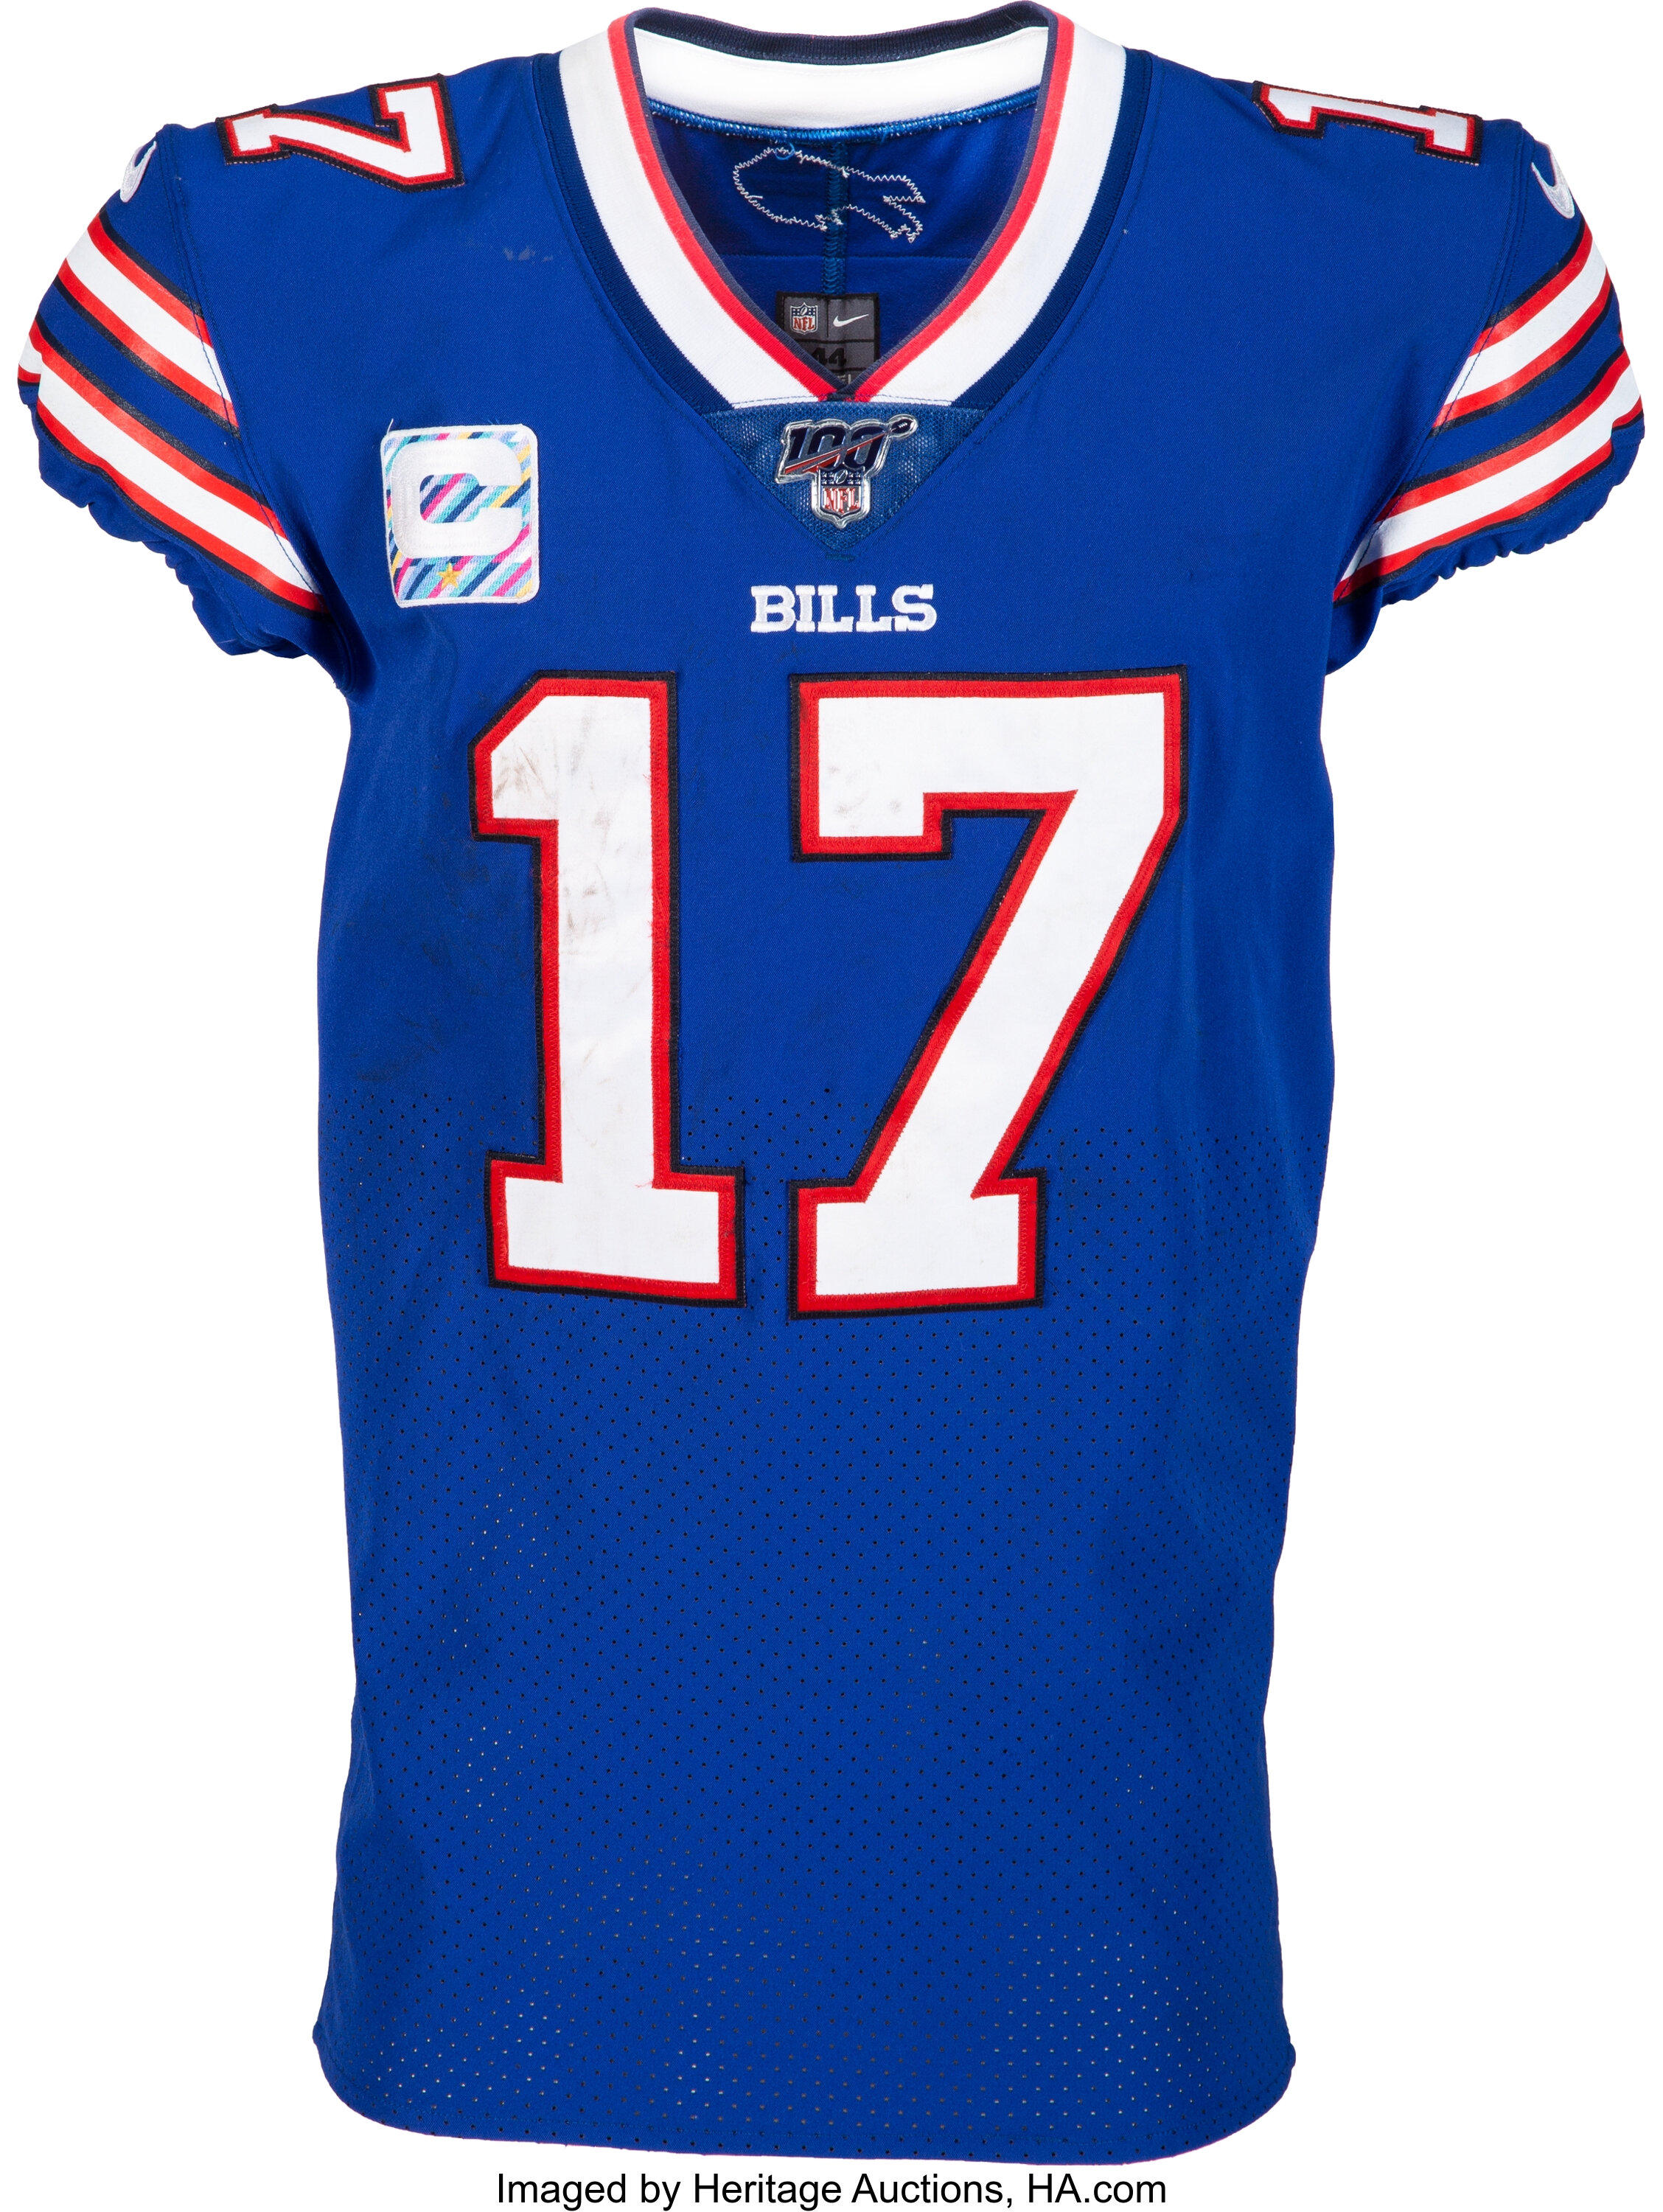 Josh Allen jerseys: Here's the top selling gear for Buffalo Bills star  quarterback 